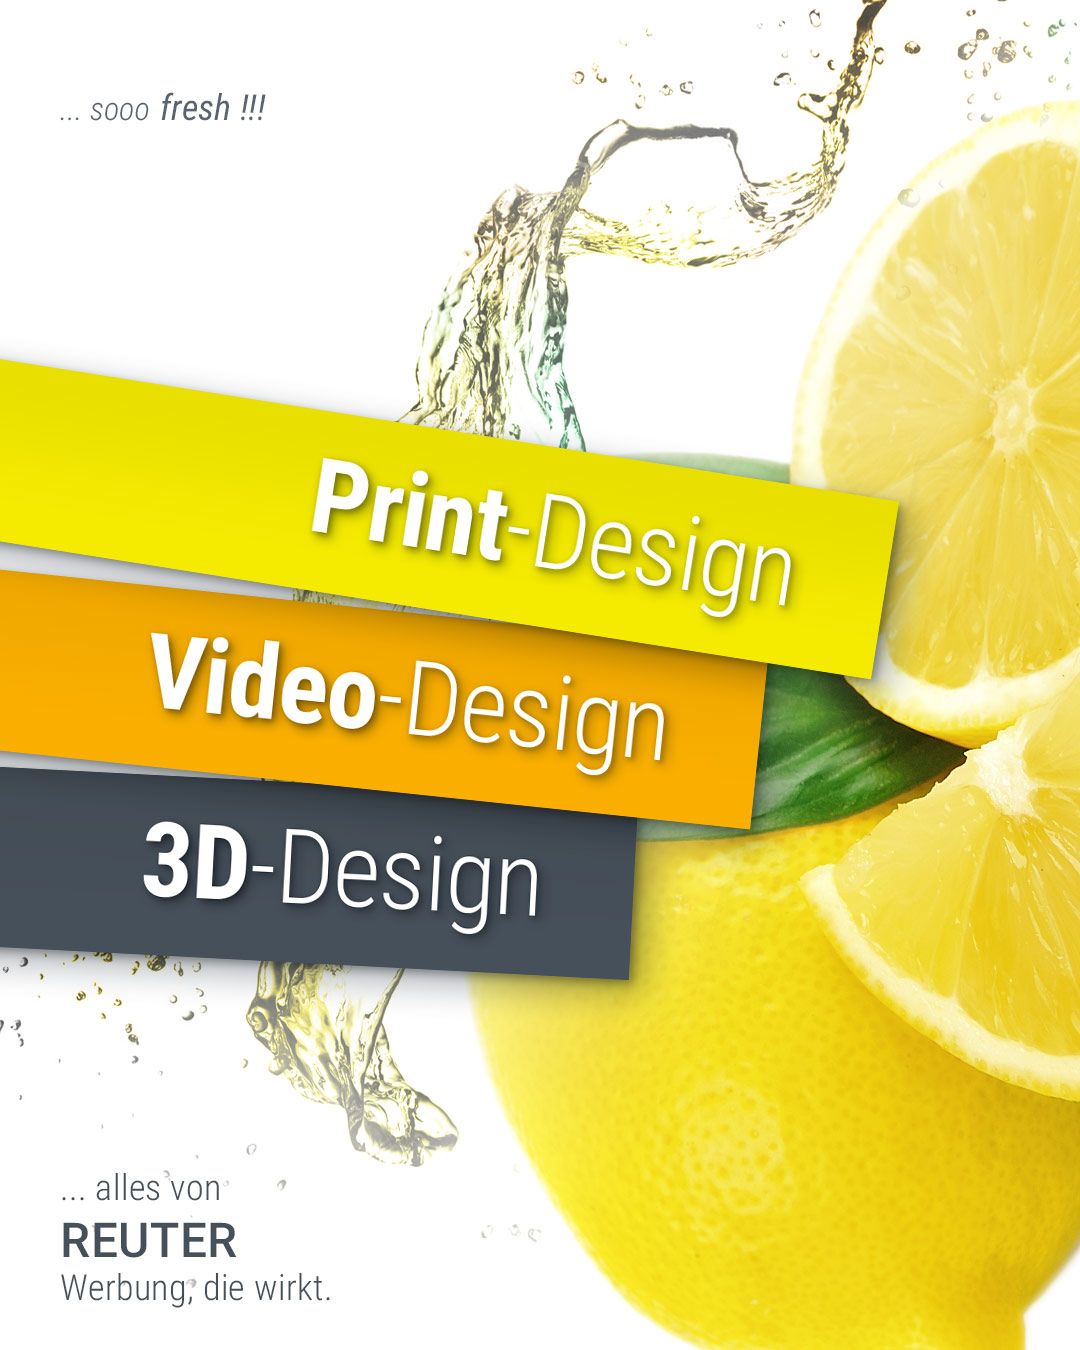 Foto: Leistungen Teil 2: Web-Design, Foto-Design & Logo-Design von REUTER - Werbung, die wirkt.